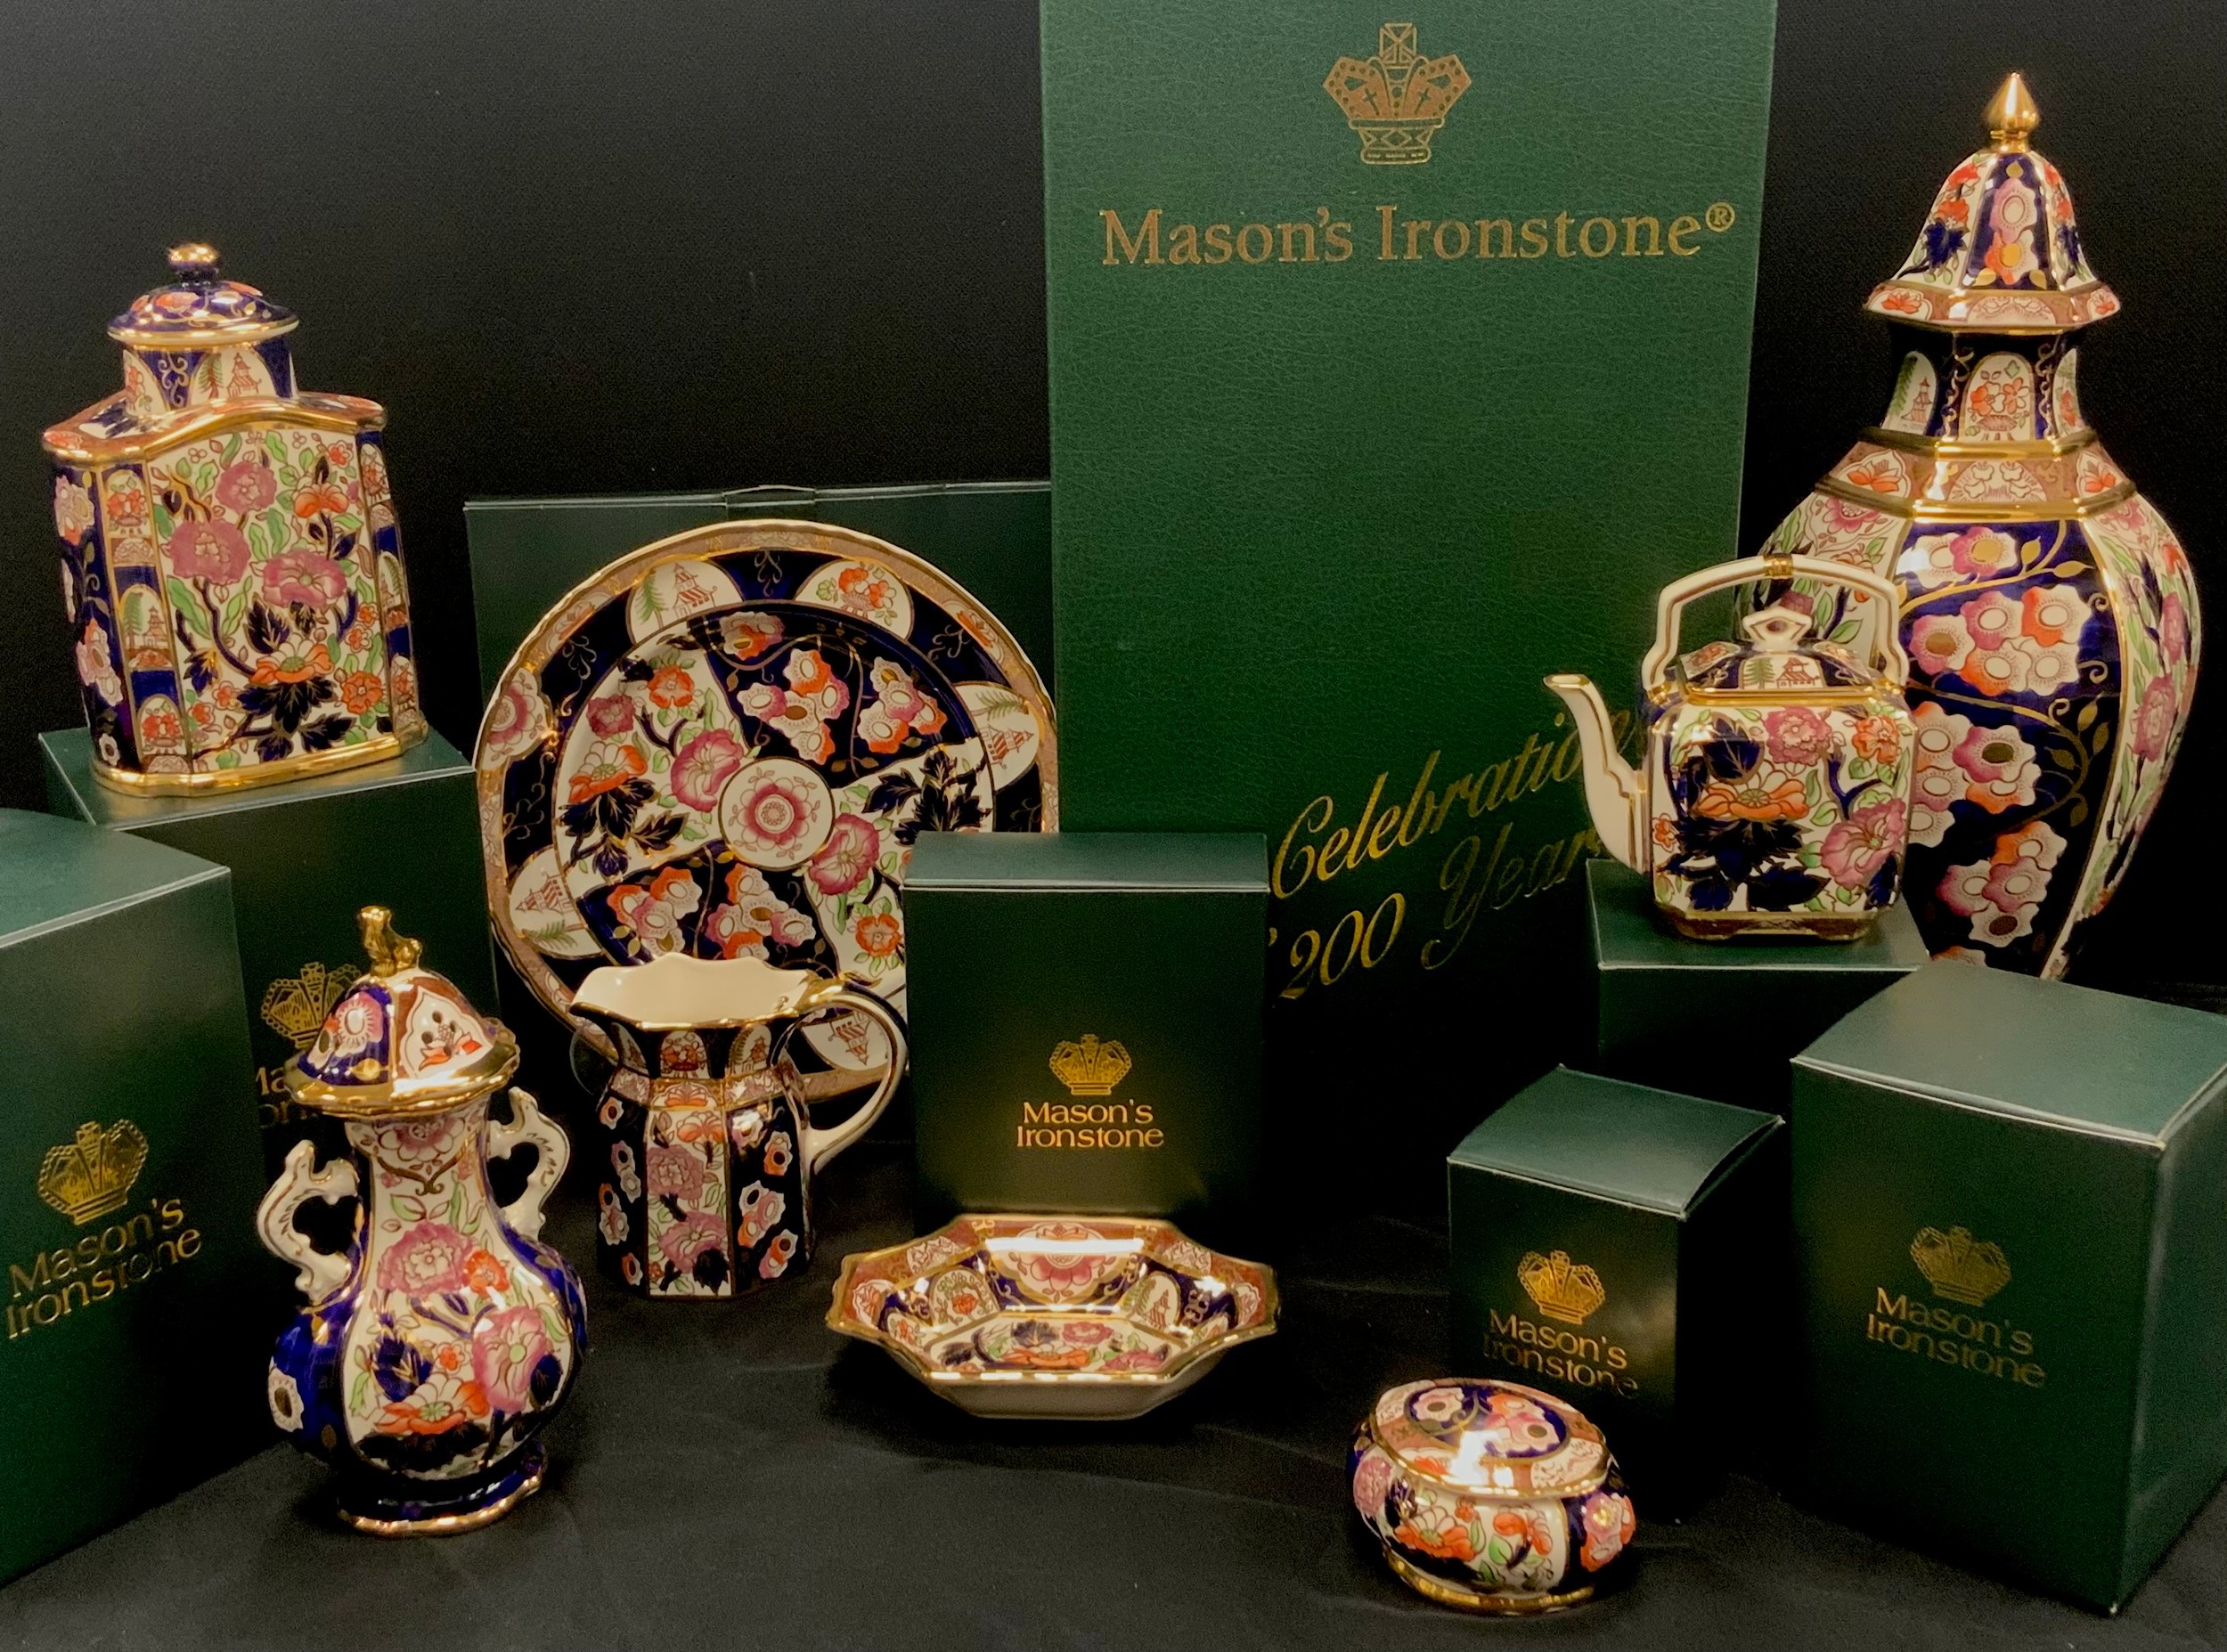 Masons Ironstone ‘Penang’ ware, celebrating 200 years including; large lidded vase, 46cm high,